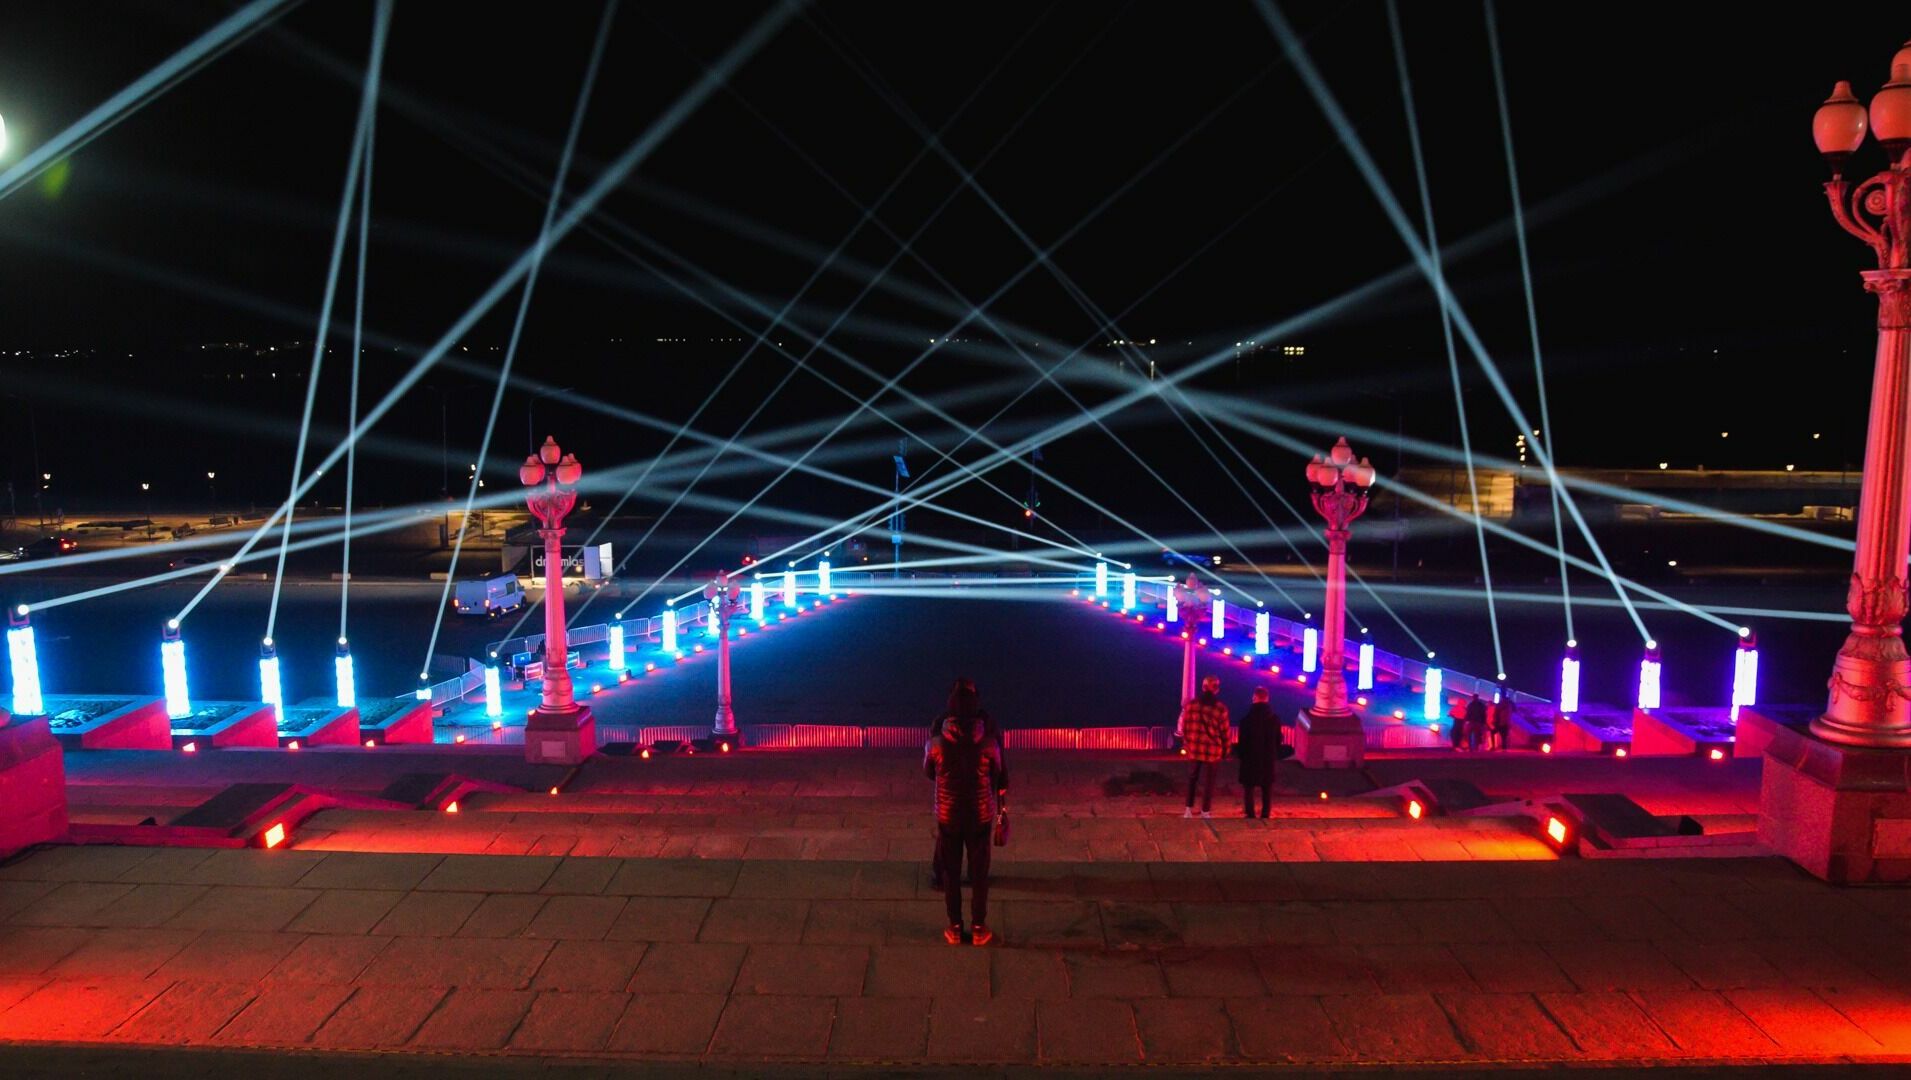 Ярче огней Лас-Вегаса: жители остались довольны световыми инсталляциями в Волгограде